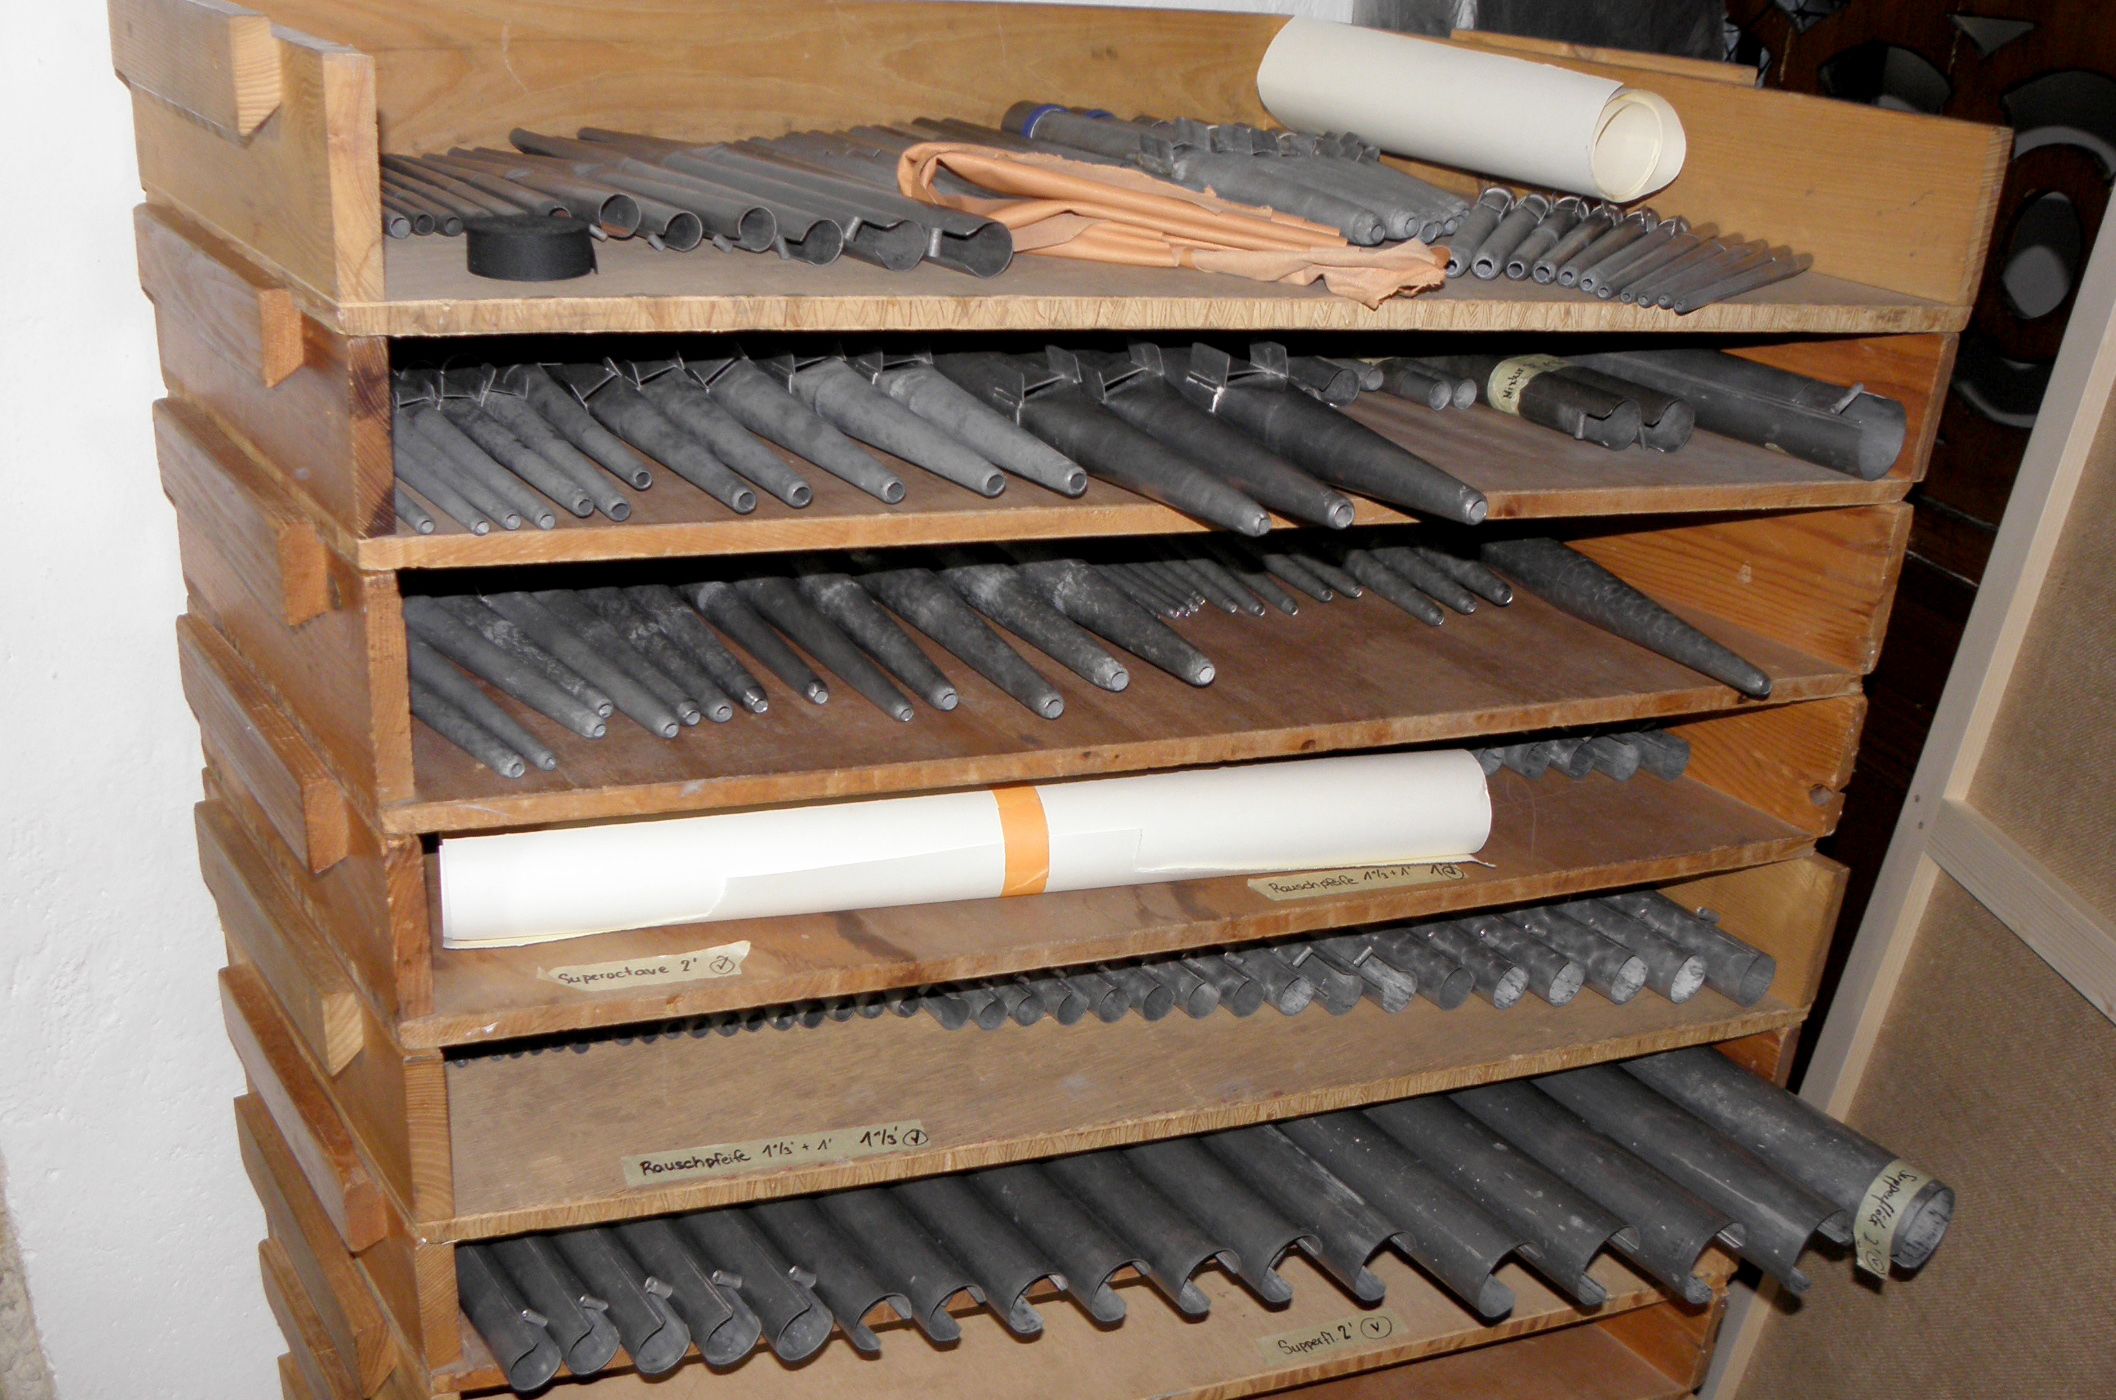 Holzregal voller Orgelpfeifen aus Metall.